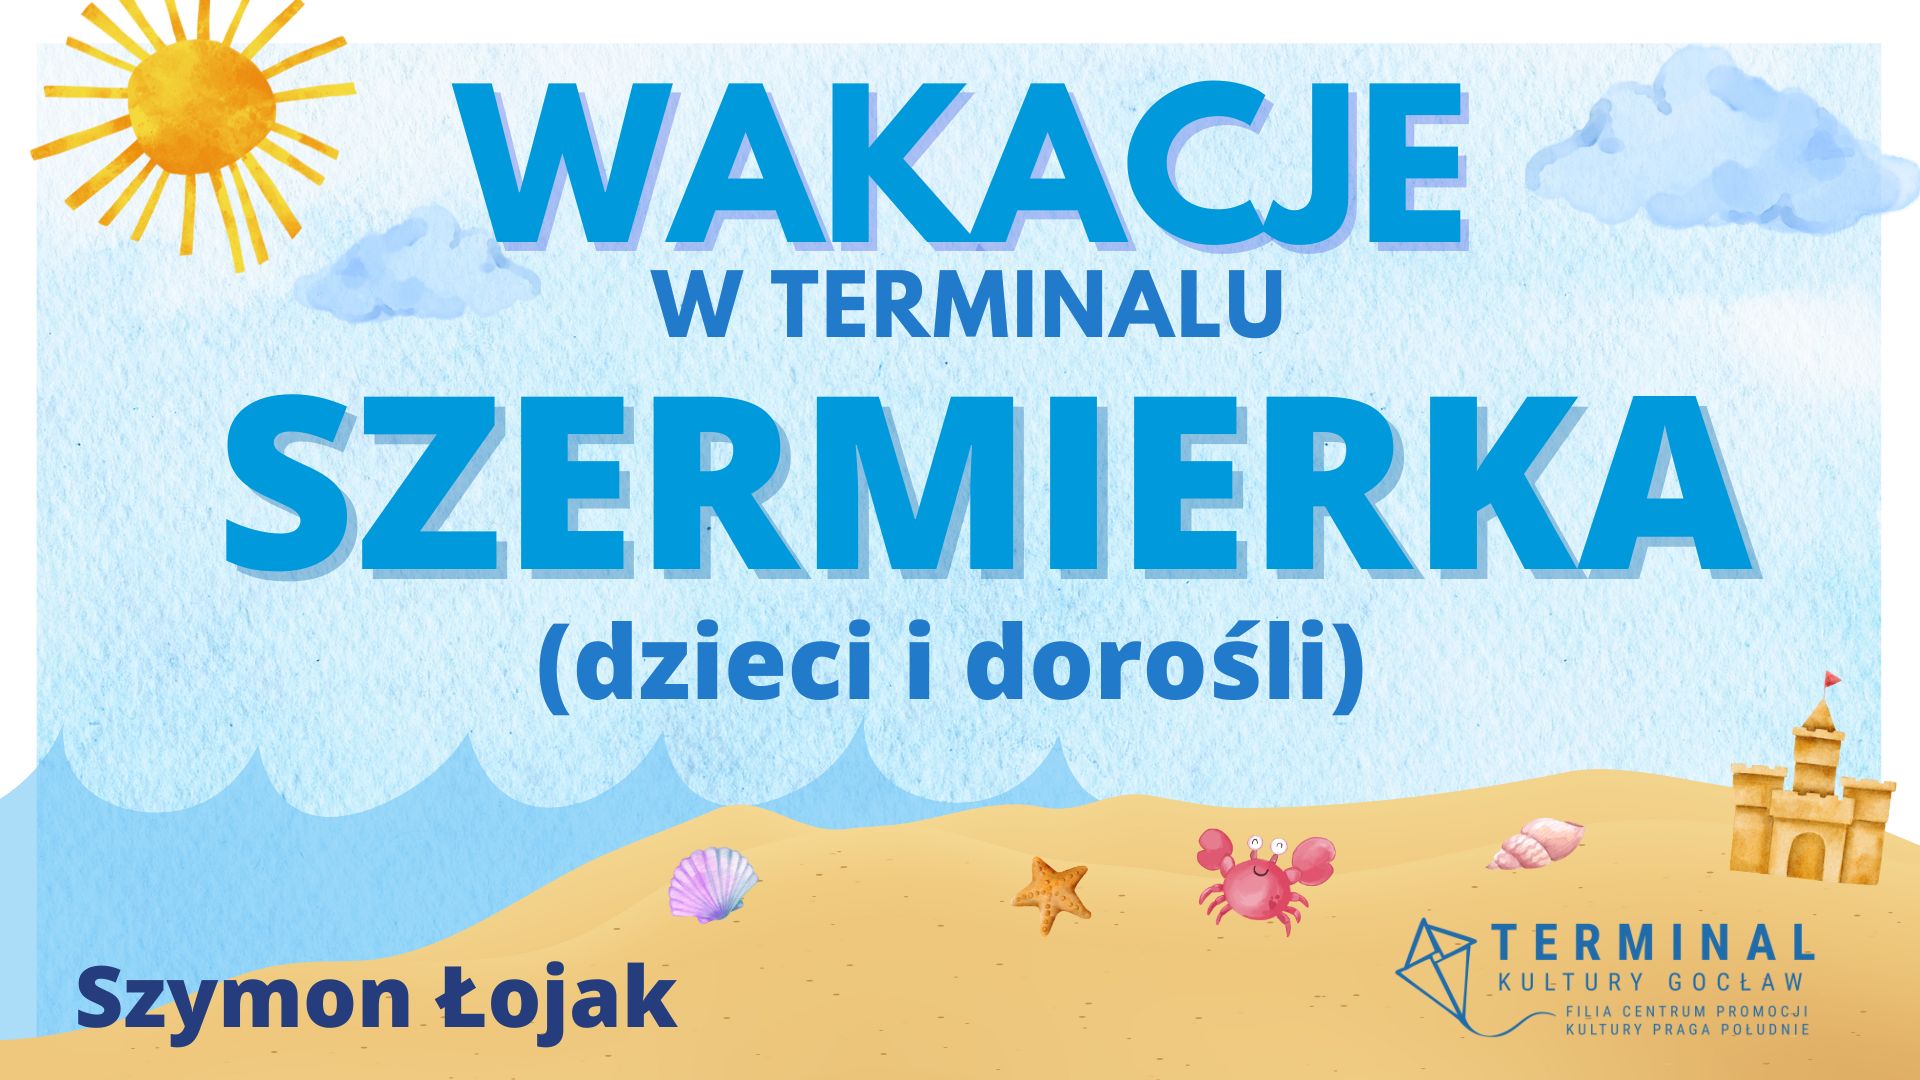 WAKACJE - SZERMIERKA Szymon Łojak